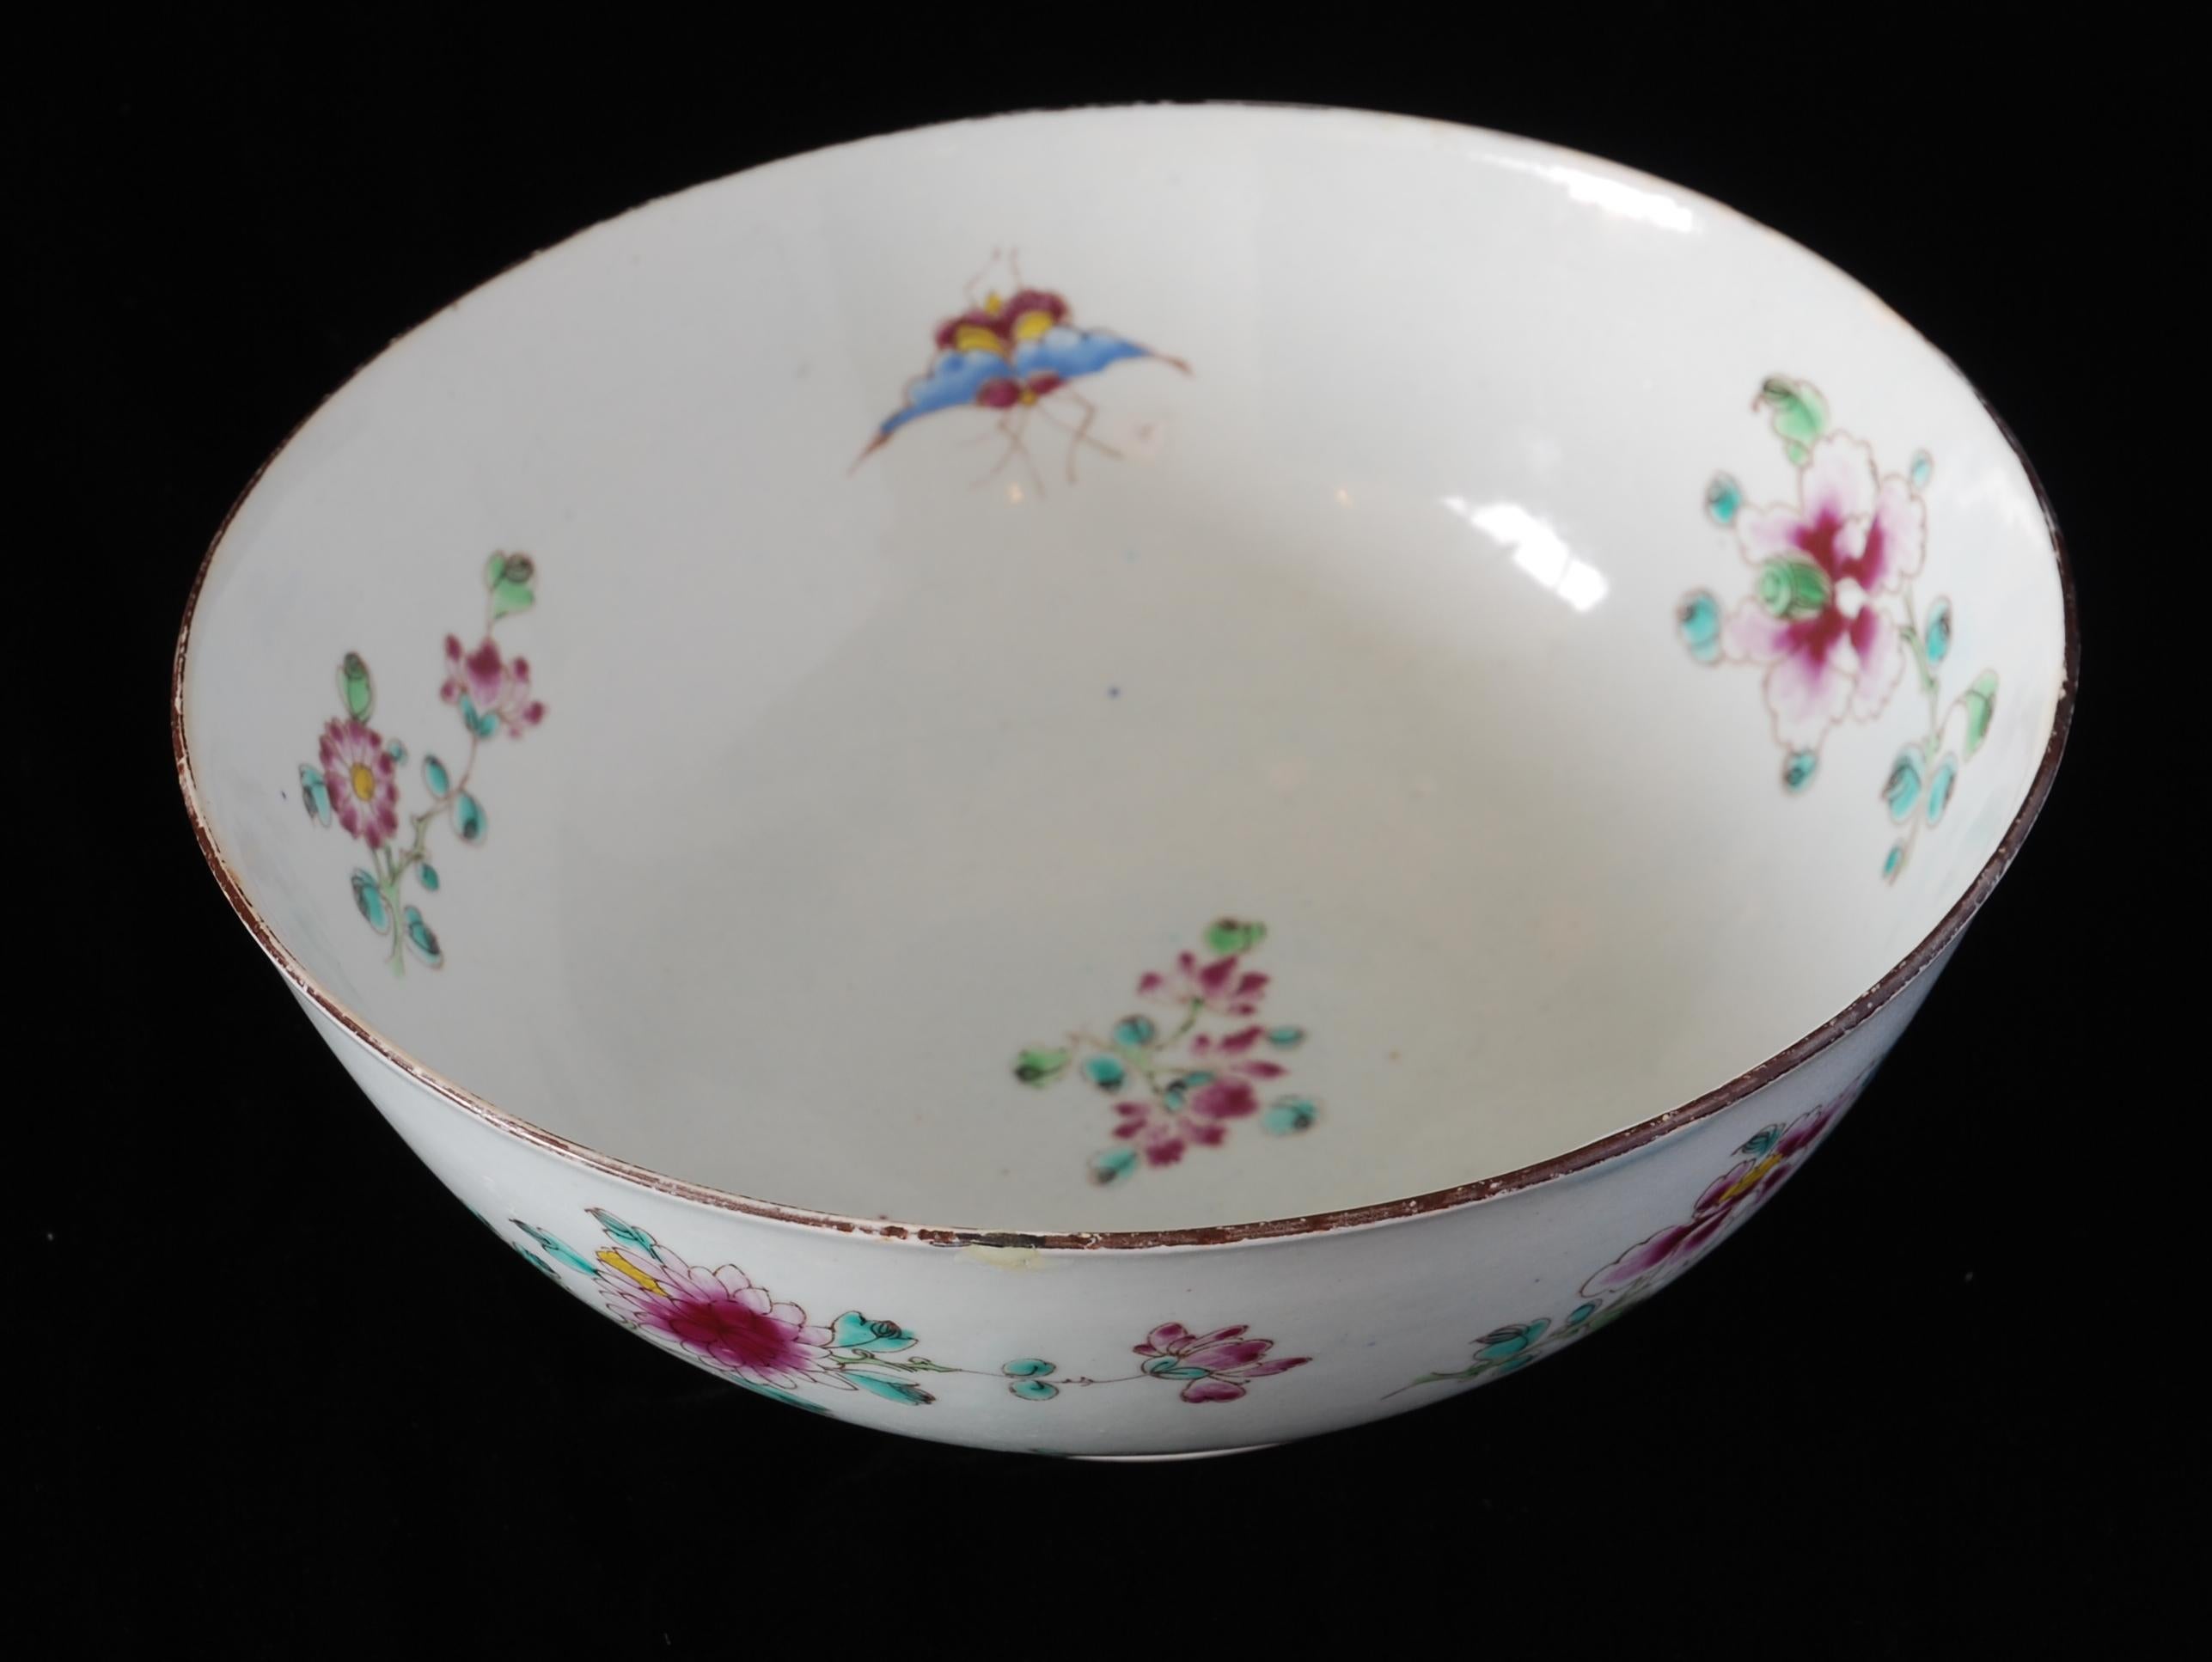 Un assez splendide bol à punch de la manufacture de porcelaine de Bow, émaillé de fleurs et d'insectes dans le style Famille Rose.